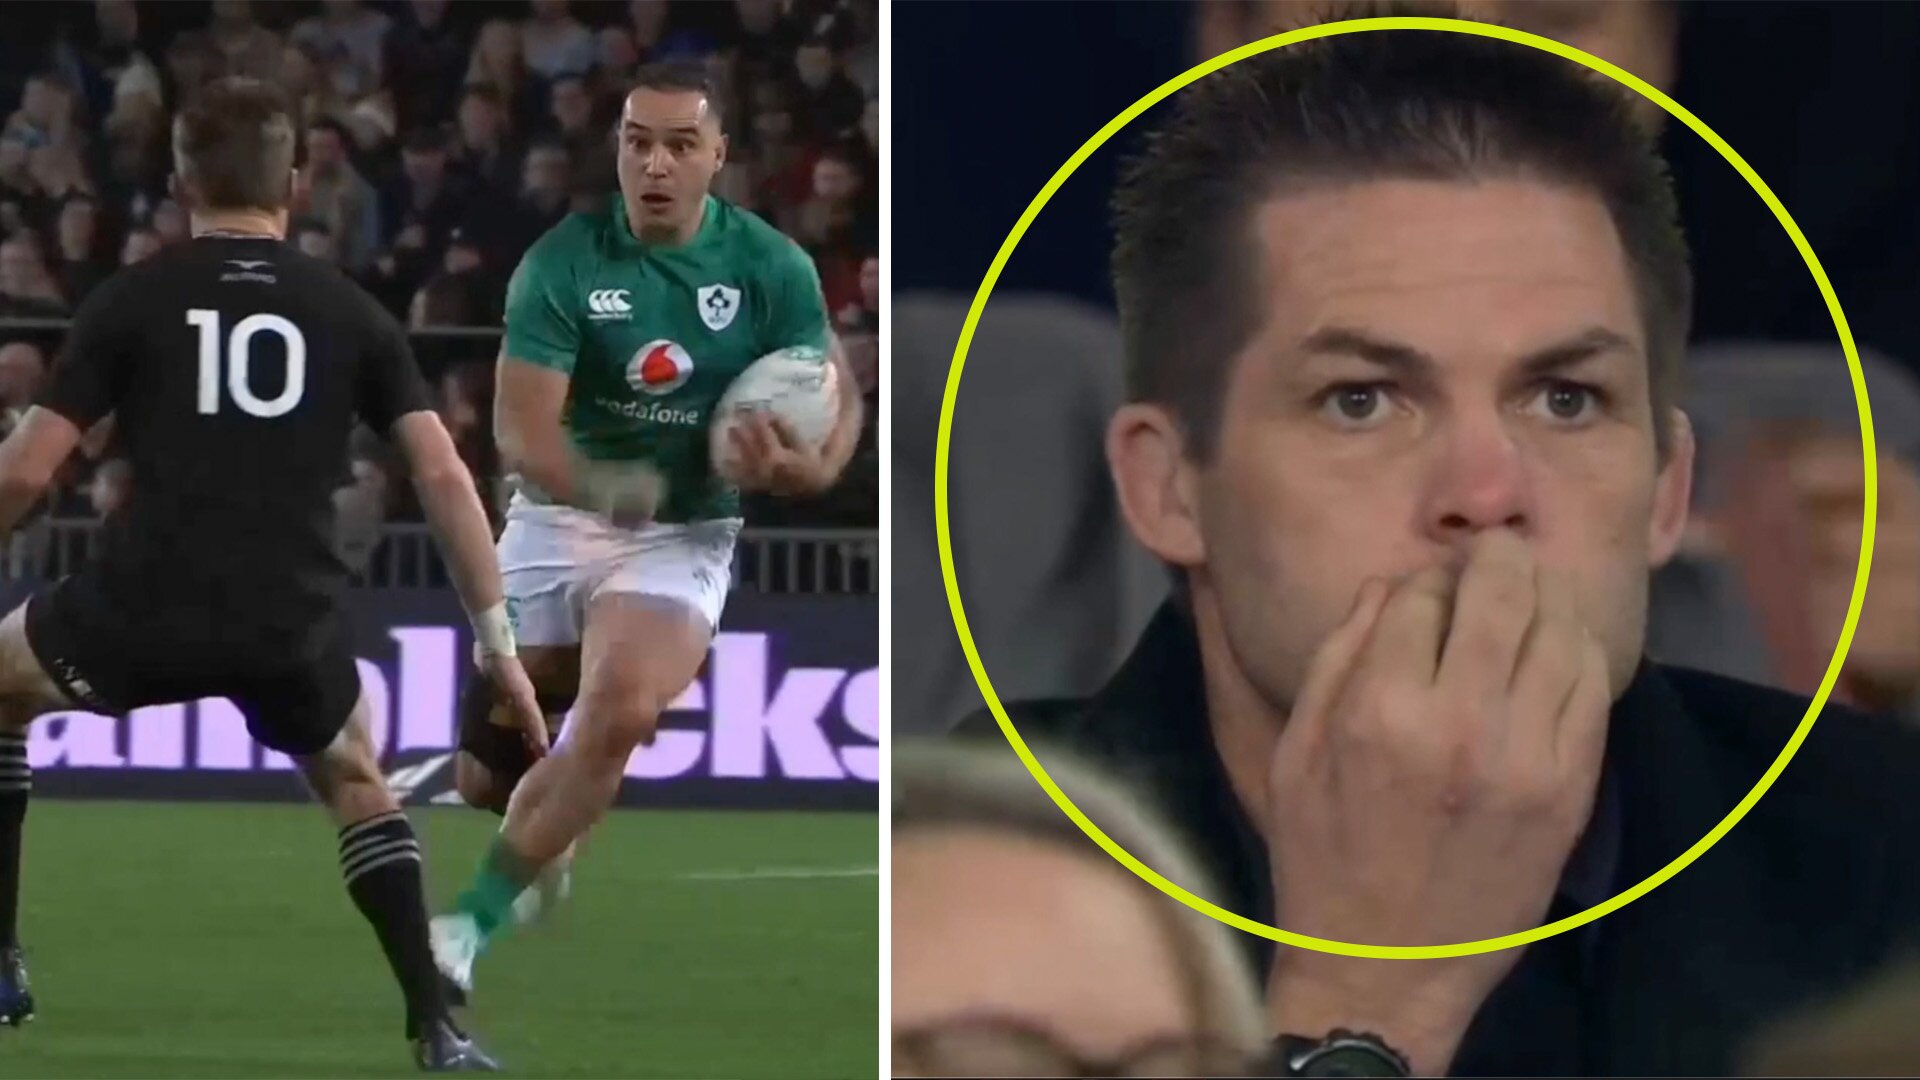 Richie McCaw in disbelief as Irish manhandle NZ